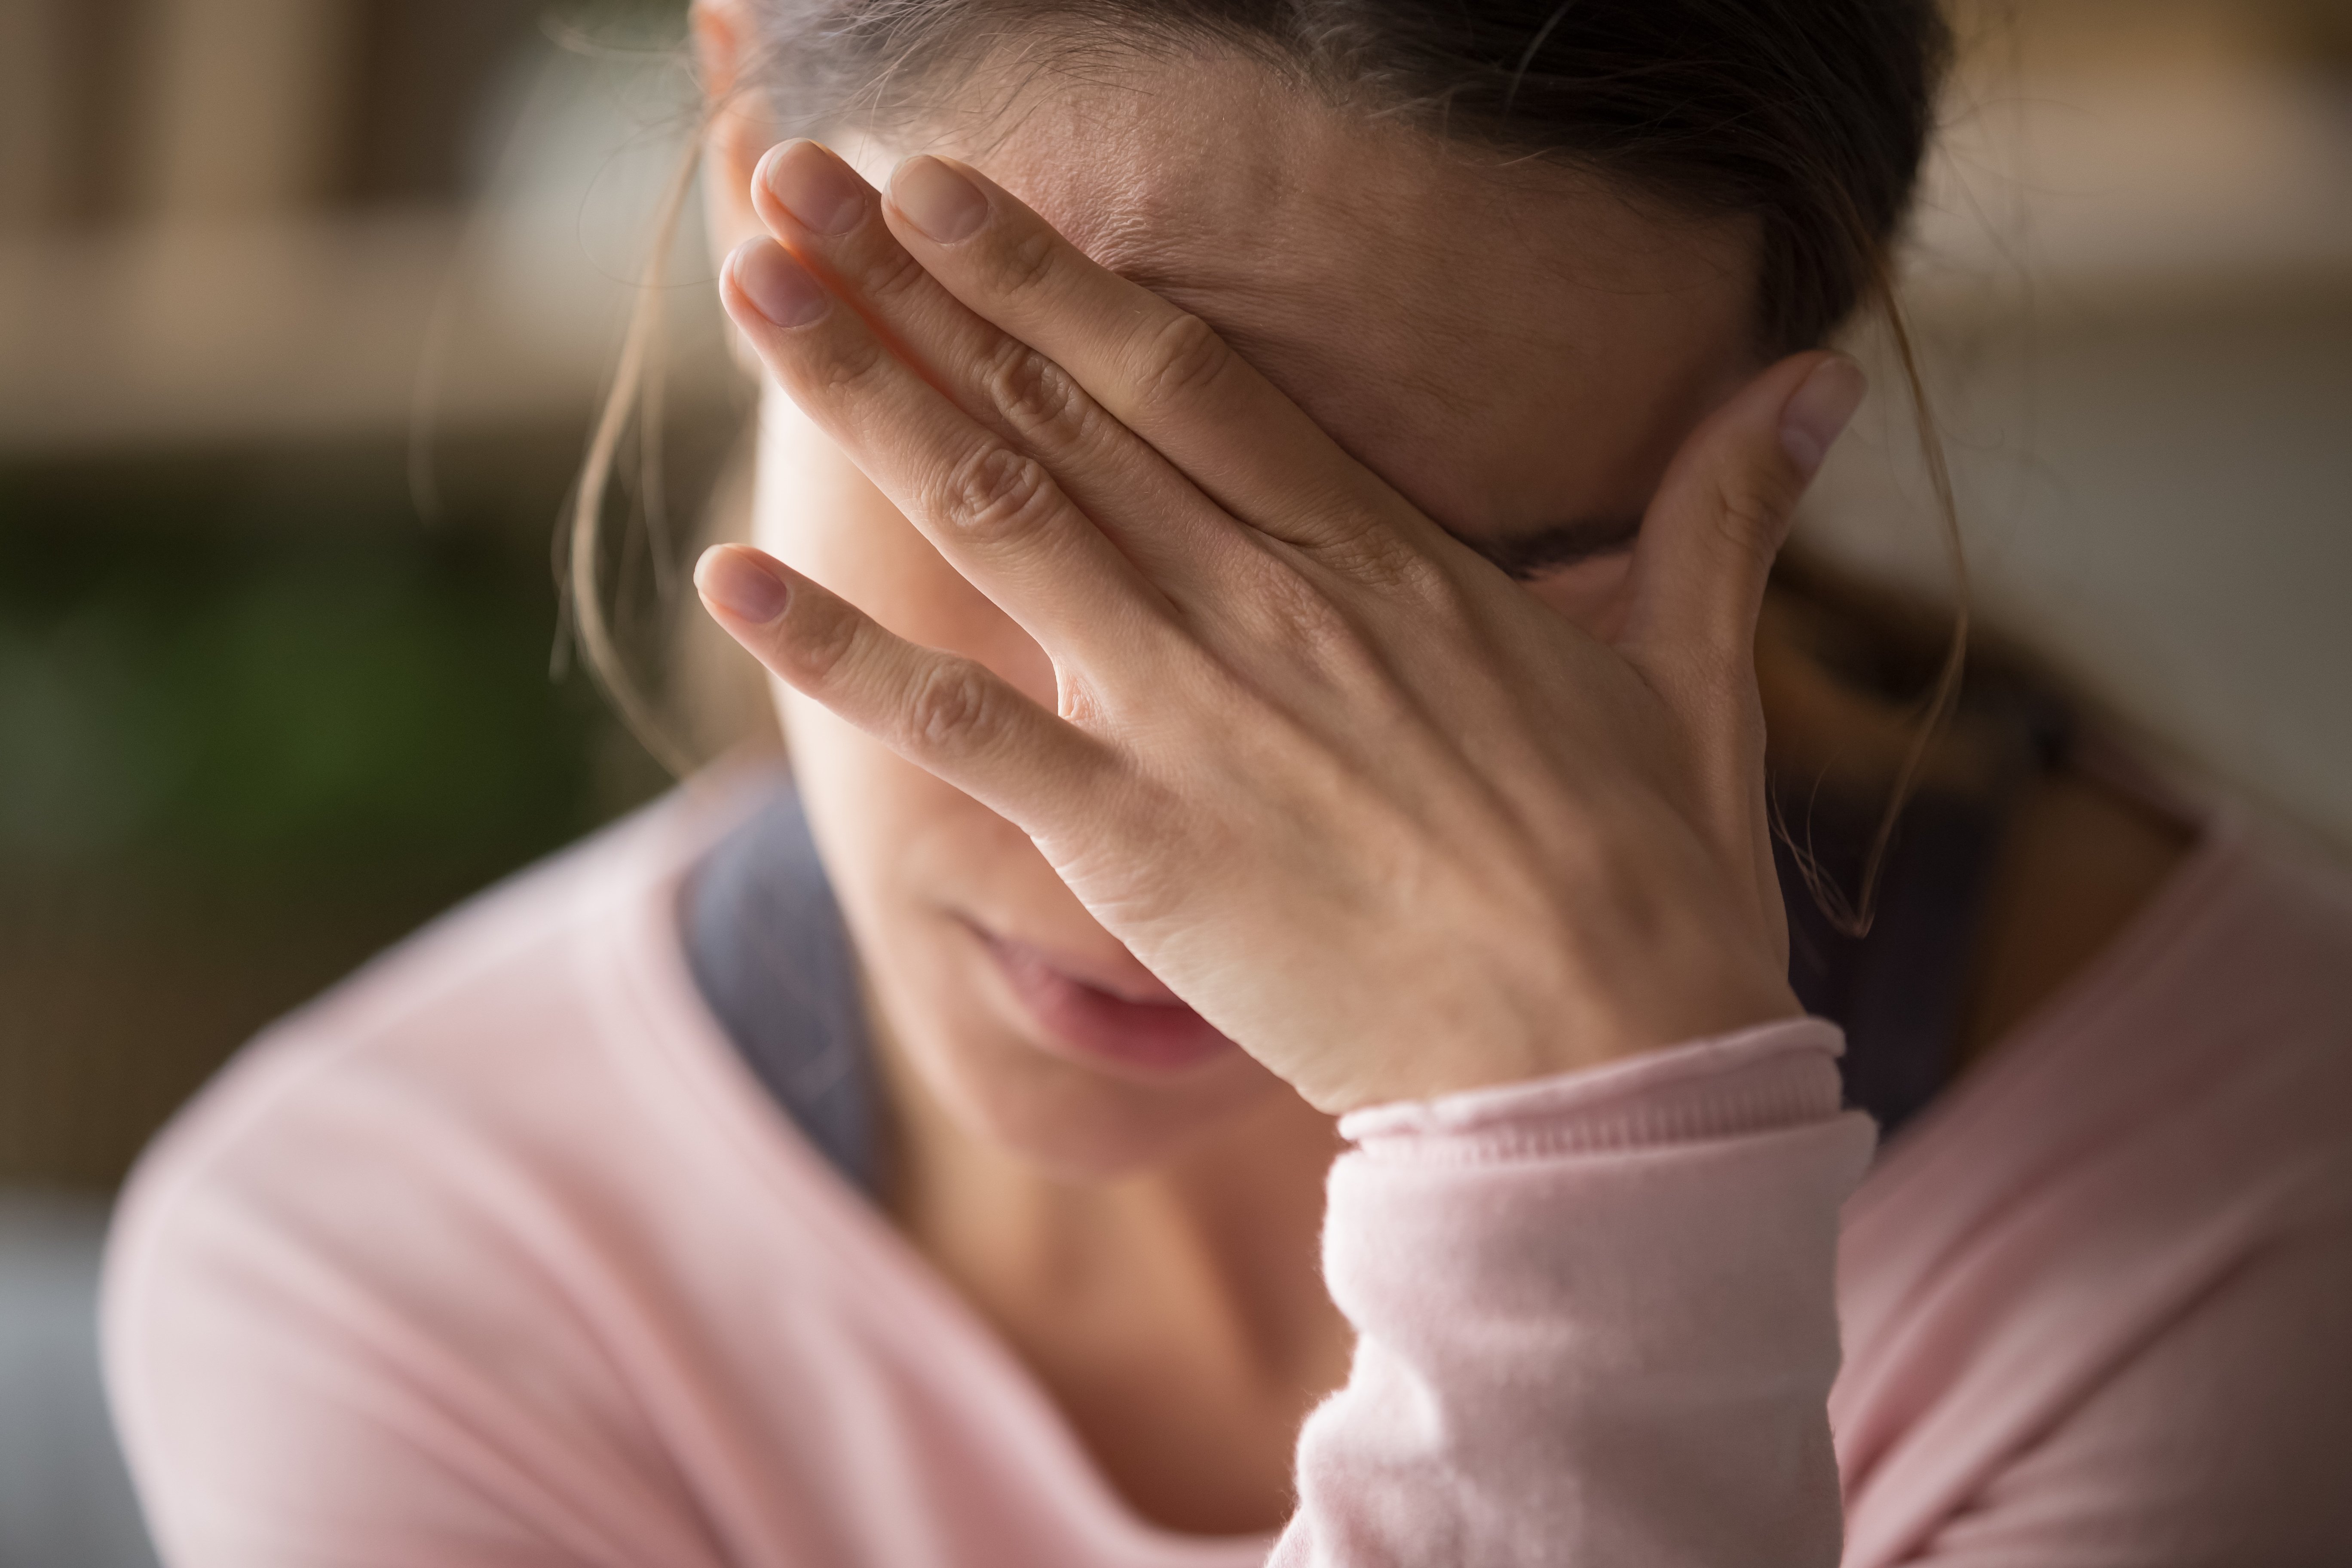 Traurige müde junge Frau, die Stirn berührt, die Kopfschmerzen, Migräne oder Depression hat | Quelle: Shutterstock